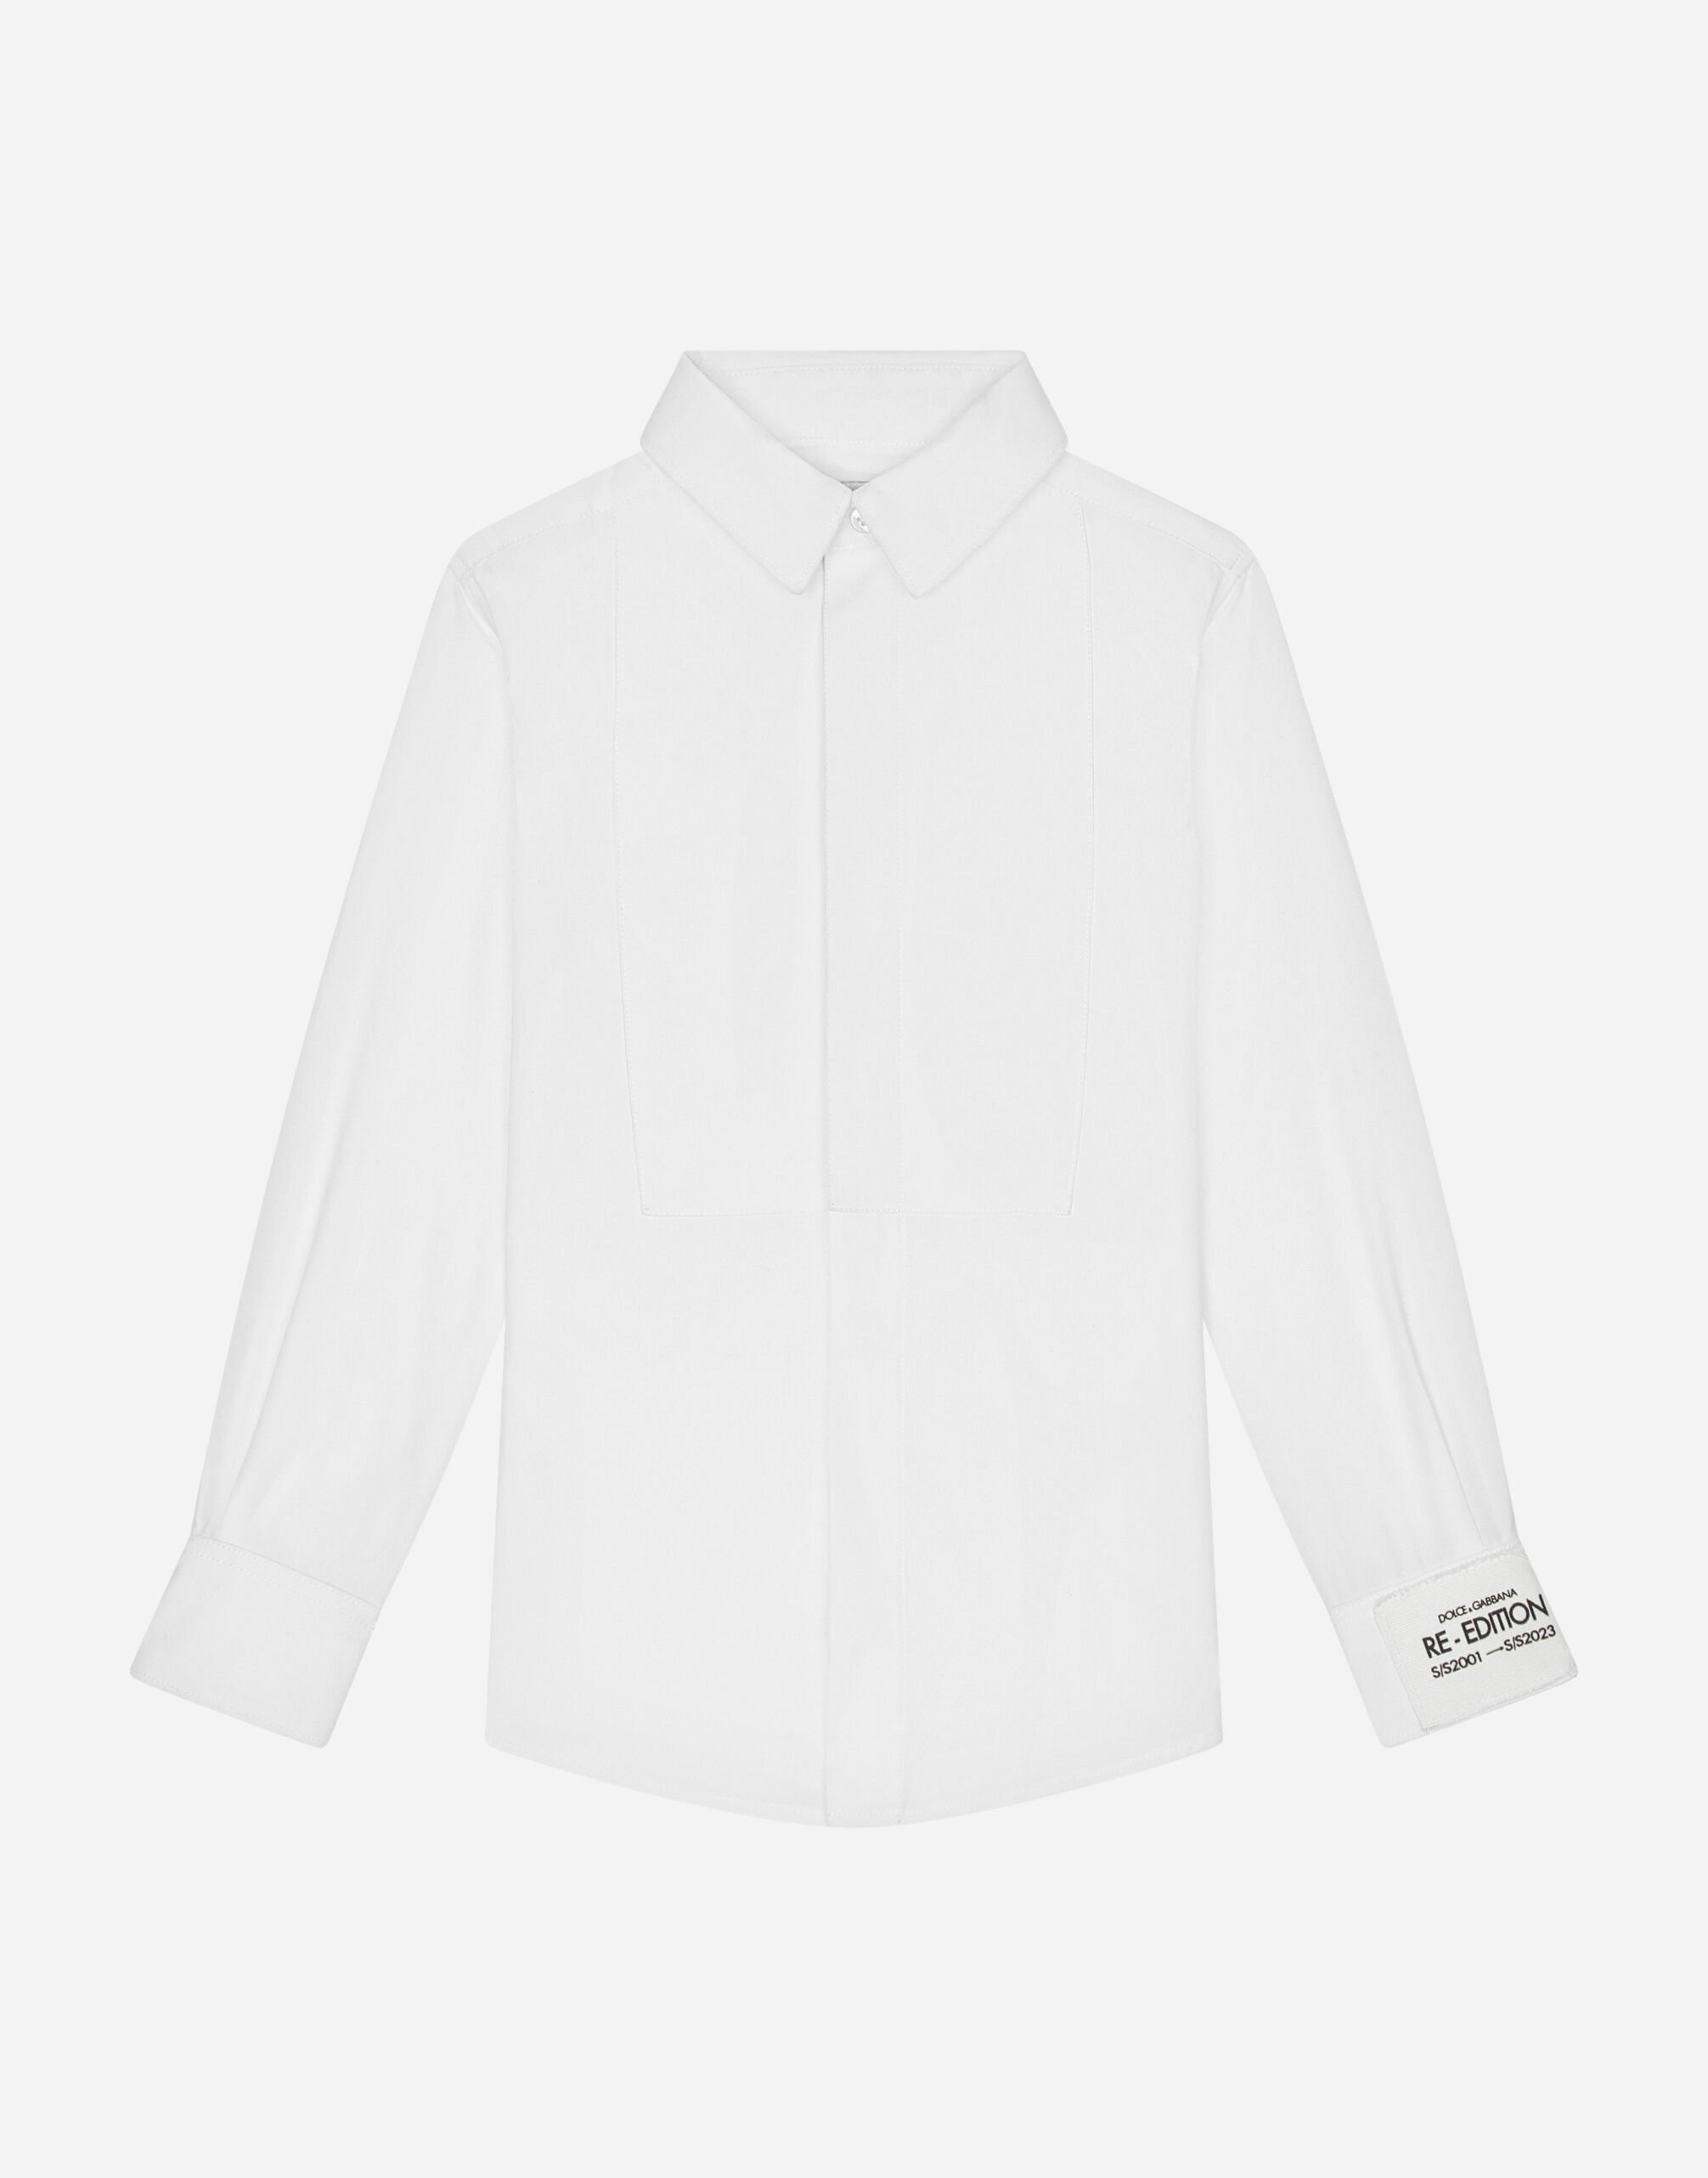 Dolce & Gabbana Cotton poplin tuxedo shirt White L43S76G7I8X